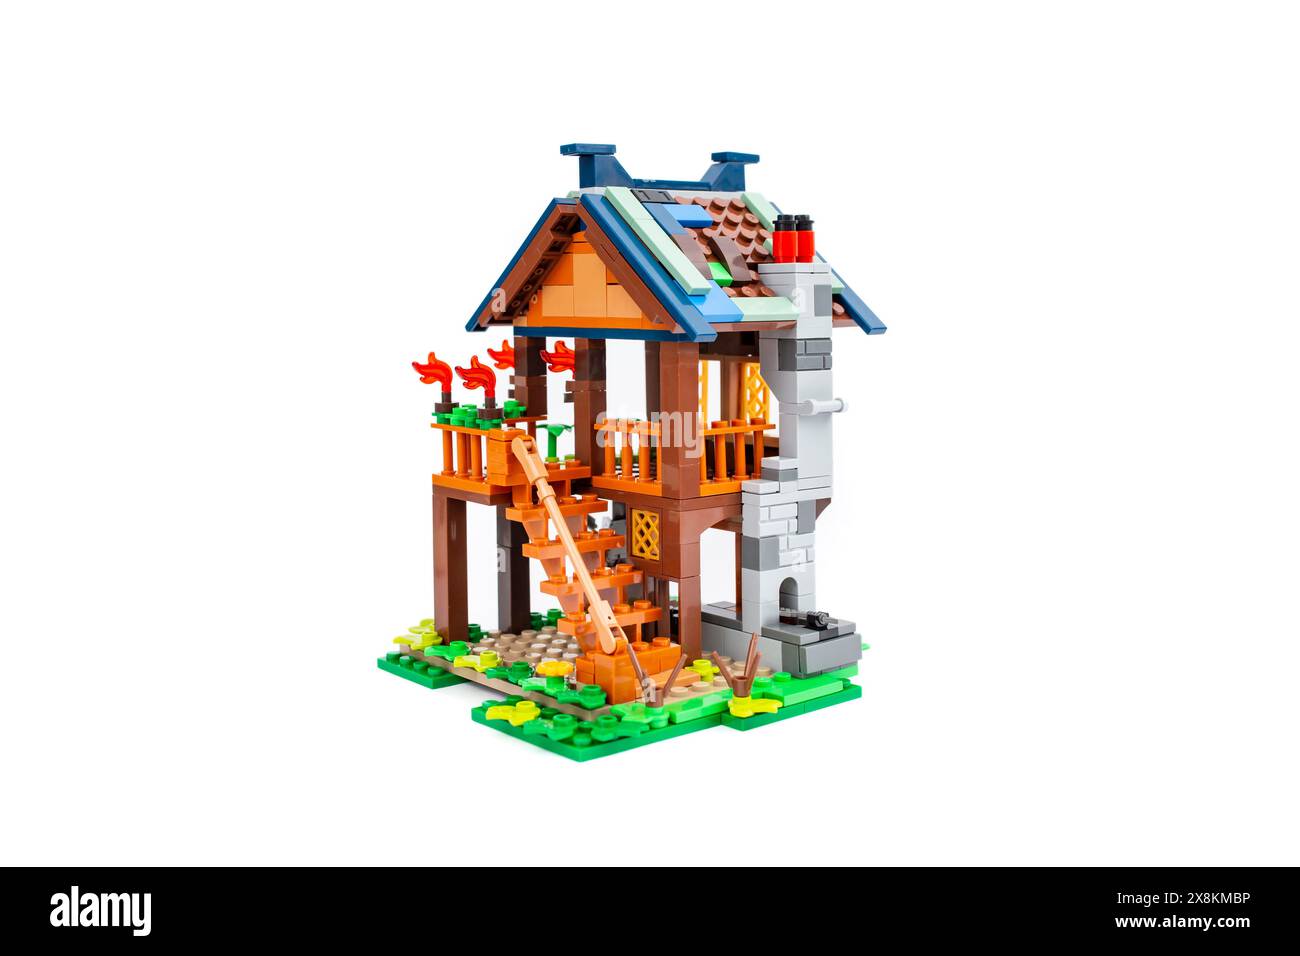 Lego bricks fairy house isolated on white Stock Photo